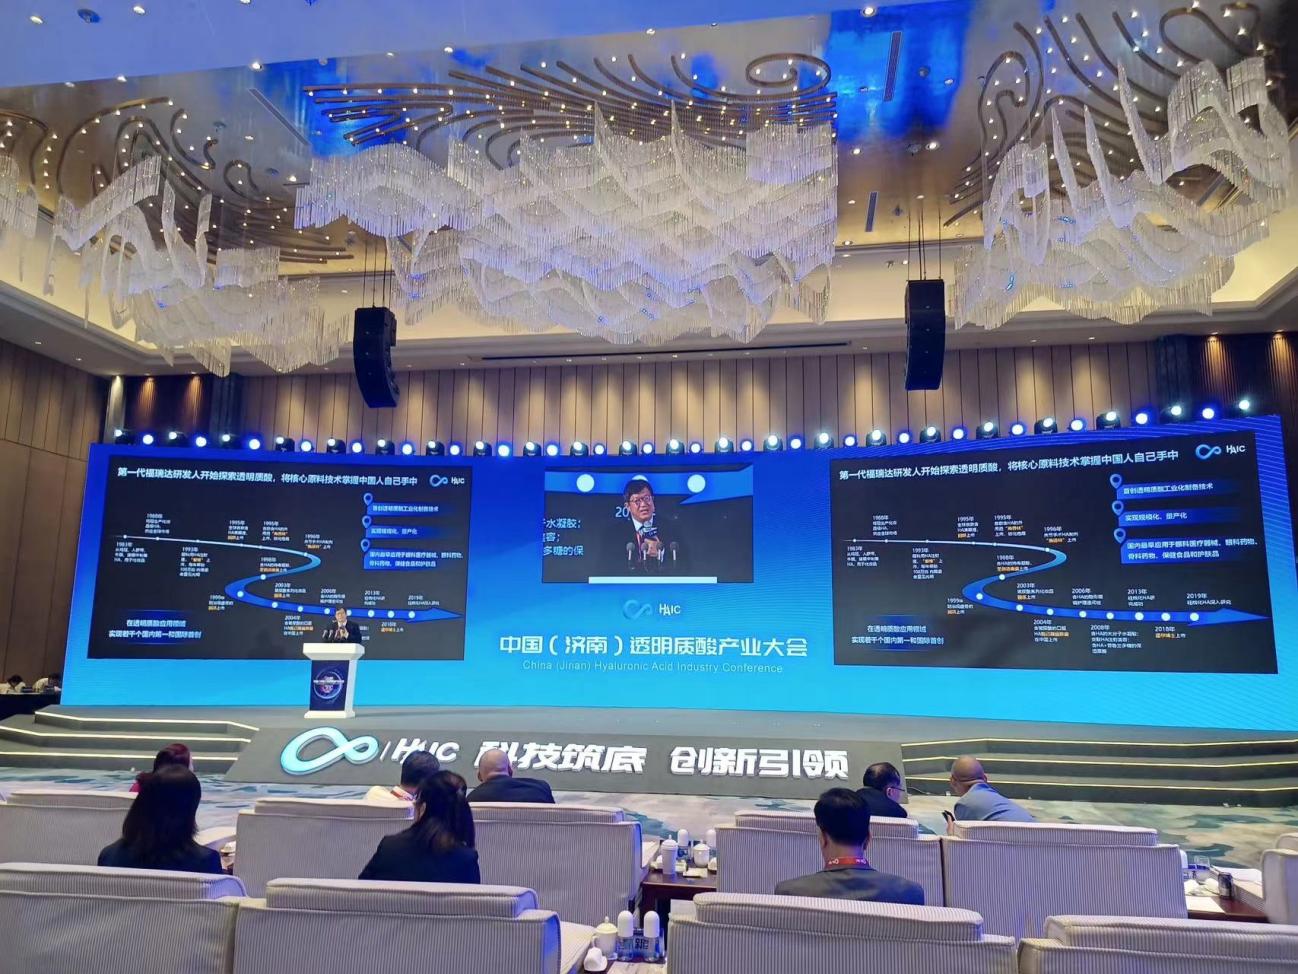 中国透明质酸产业大会开幕 福瑞达呼吁共建“透明质酸+”产业生态